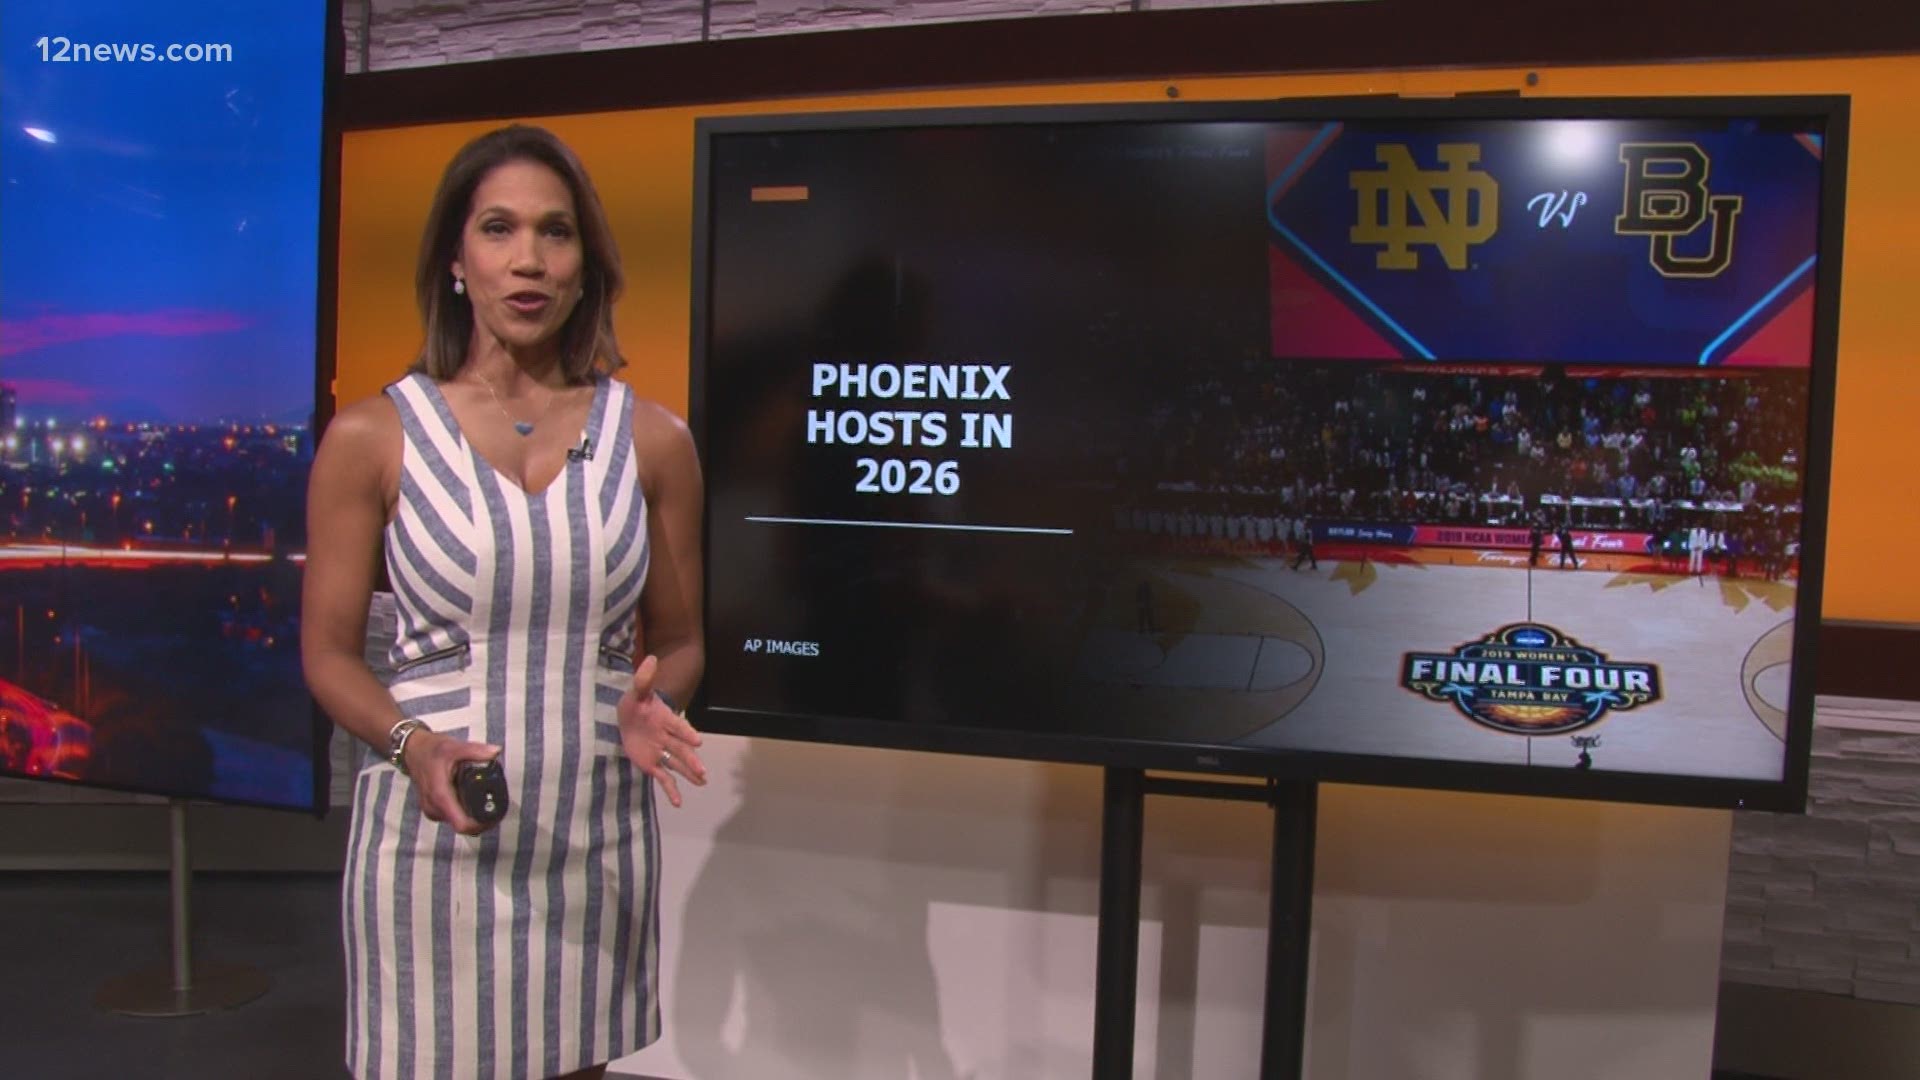 Phoenix will host the NCAA Women's Final Four in 2026. The women's Final Four has not been staged in the West since 2012.